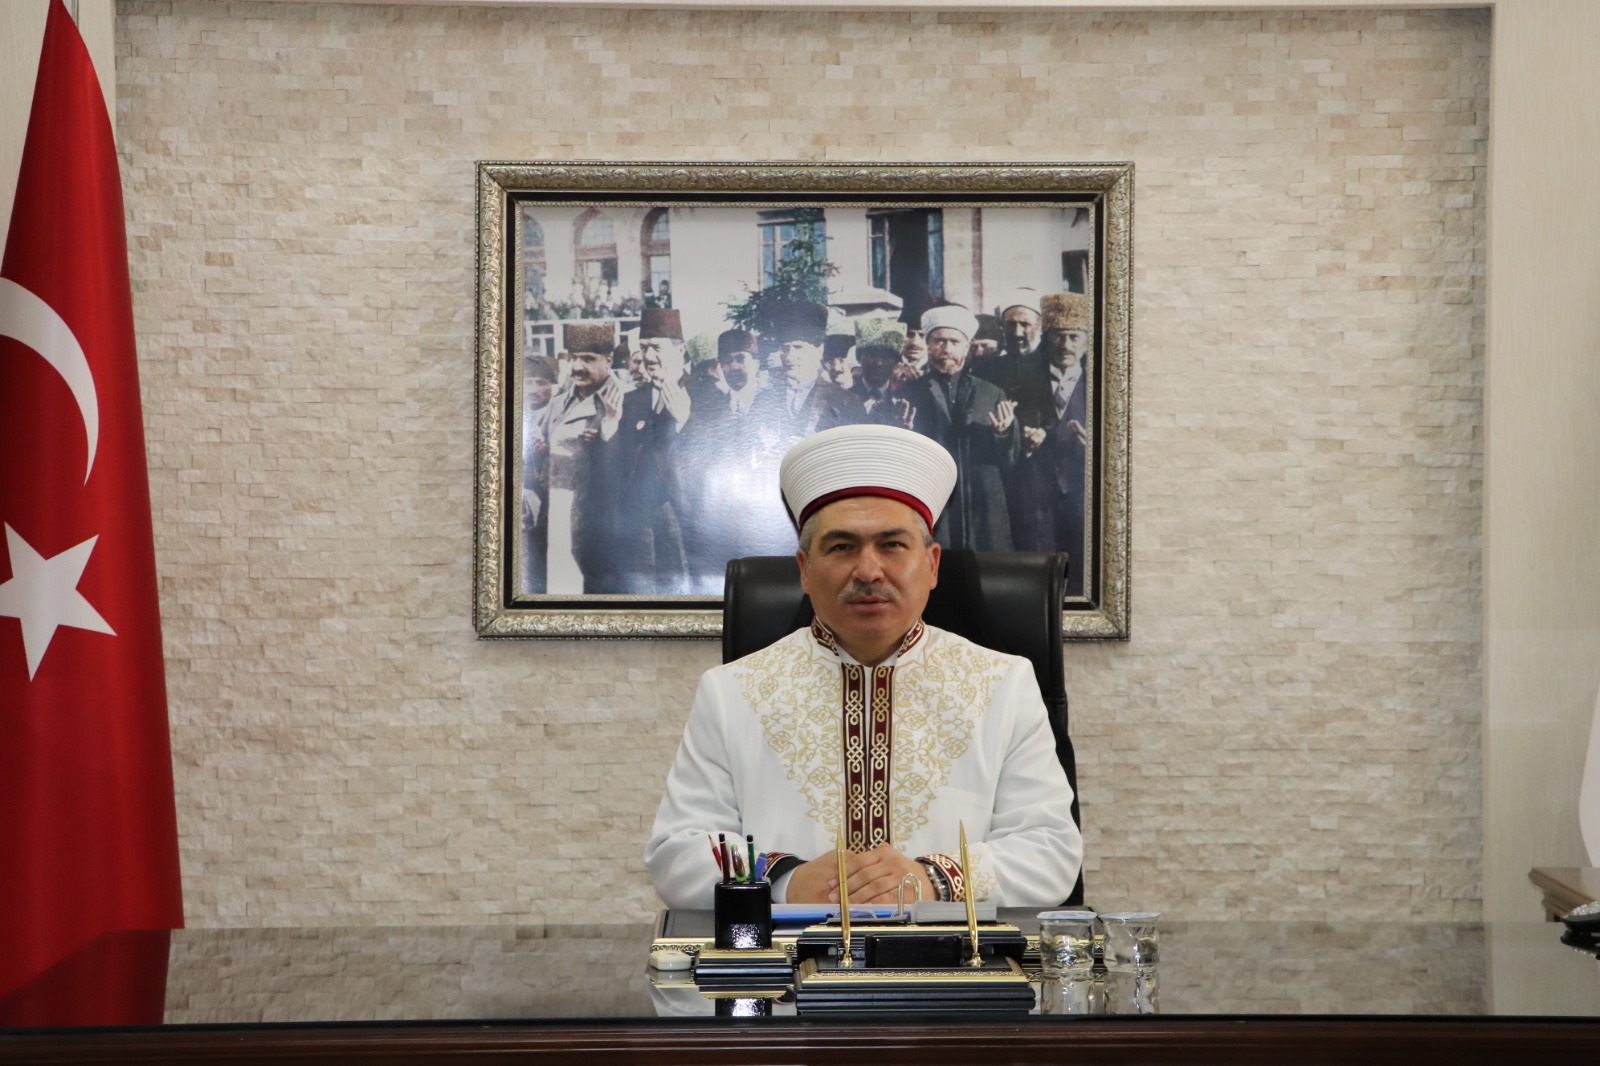 İl Müftüsü Ahmet Celalettin Altunkaya Ramazan Mesajı